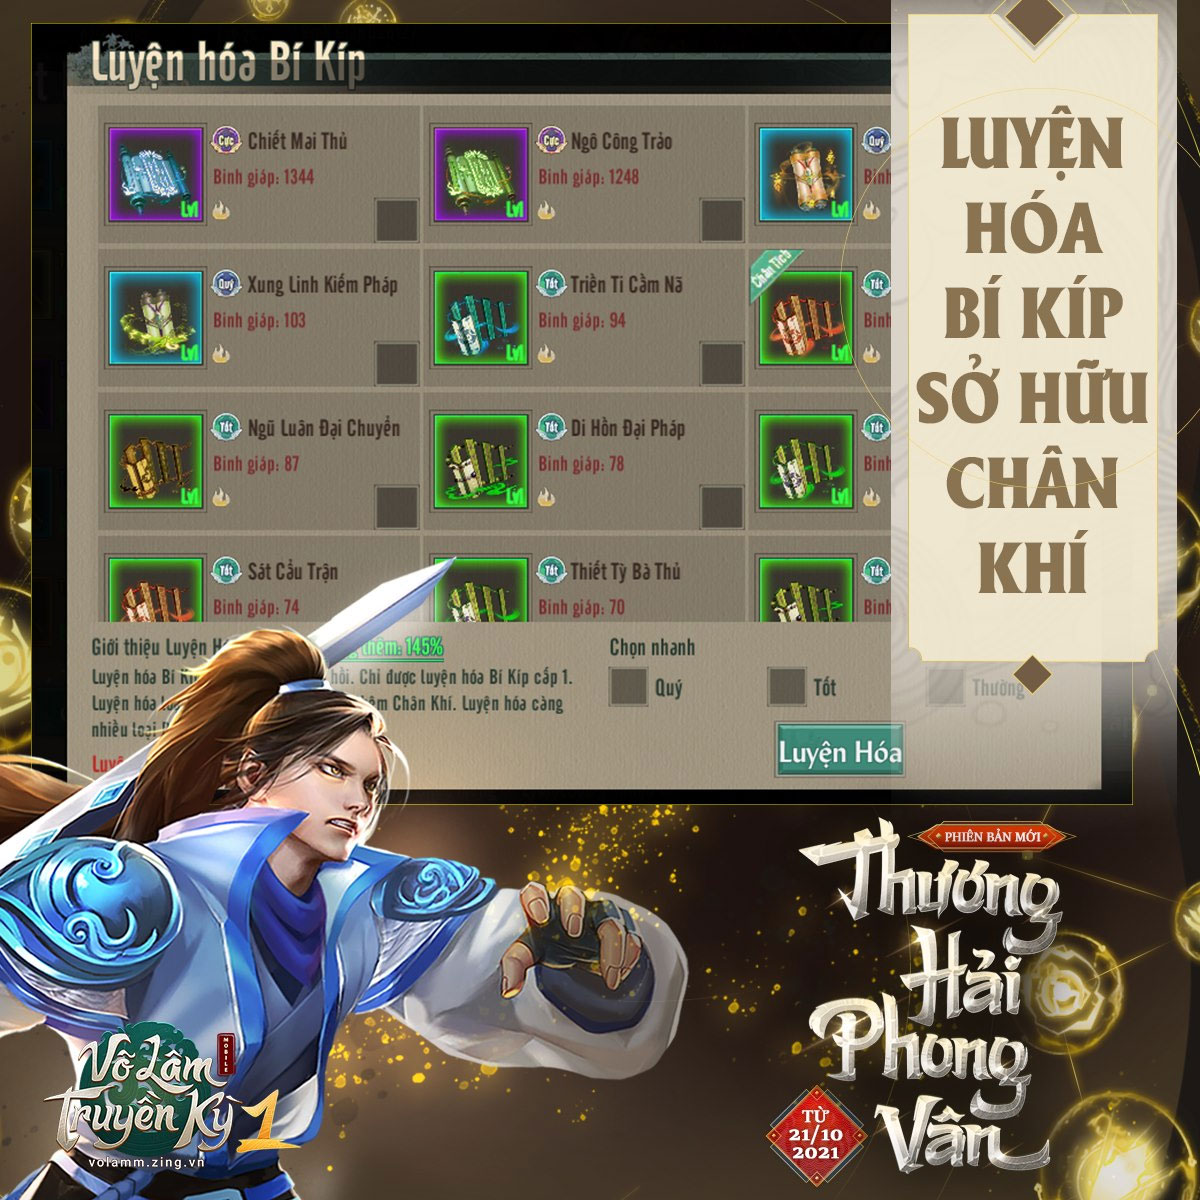 21/10 – Võ Lâm Truyền Kỳ 1 Mobile chính thức ra mắt Thương Hải Phong Vân